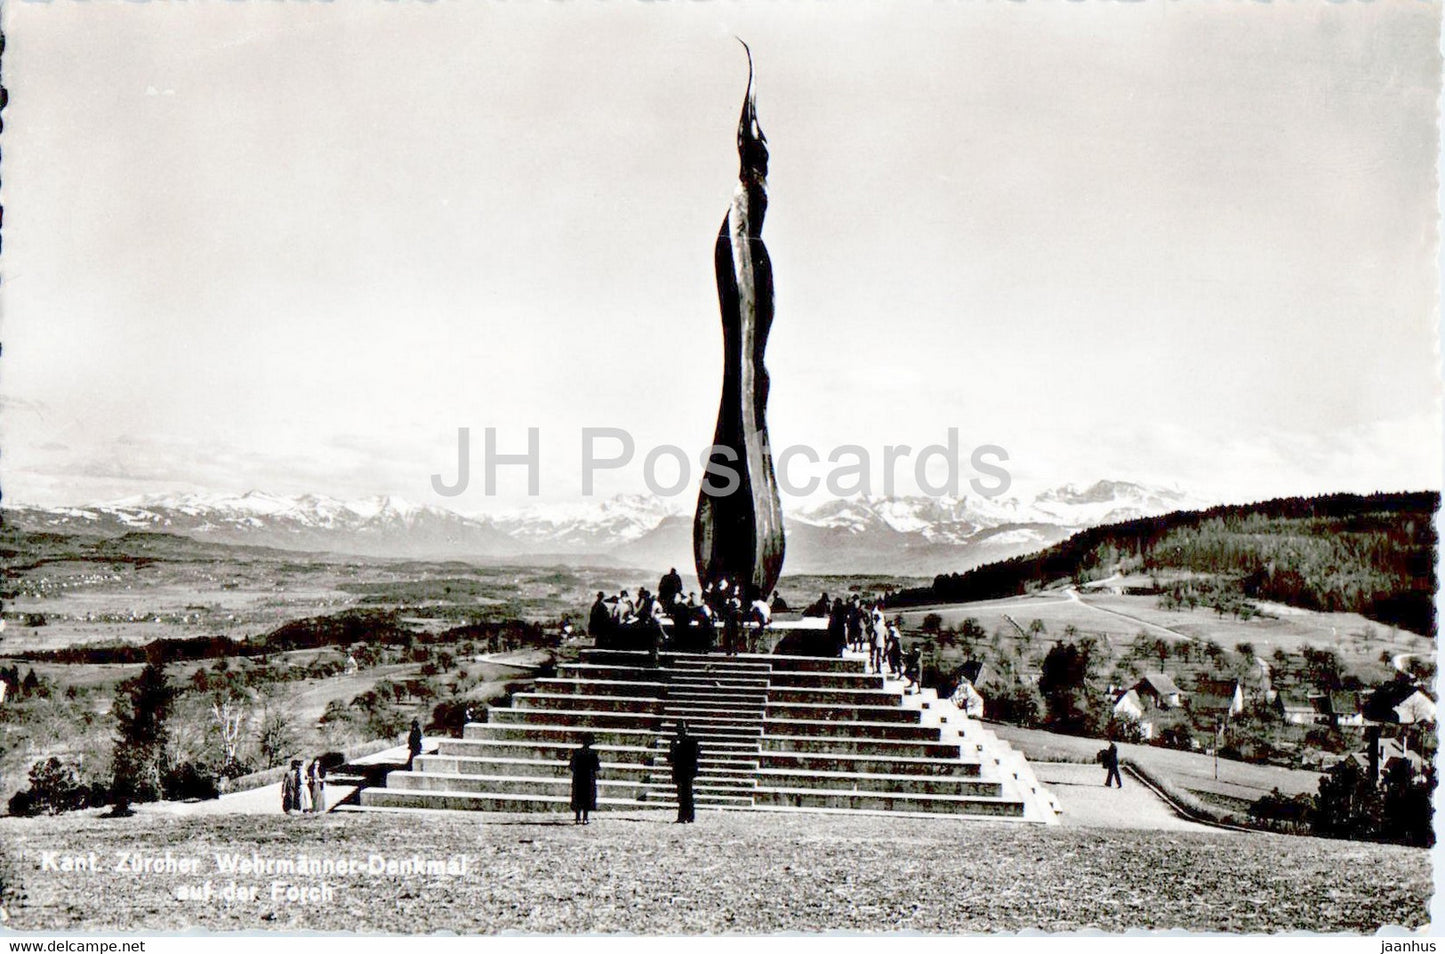 Zurcher Wehrmanner Denkmal auf der Forch - monument - 5459 - old postcard - 1952 - Switzerland - used - JH Postcards